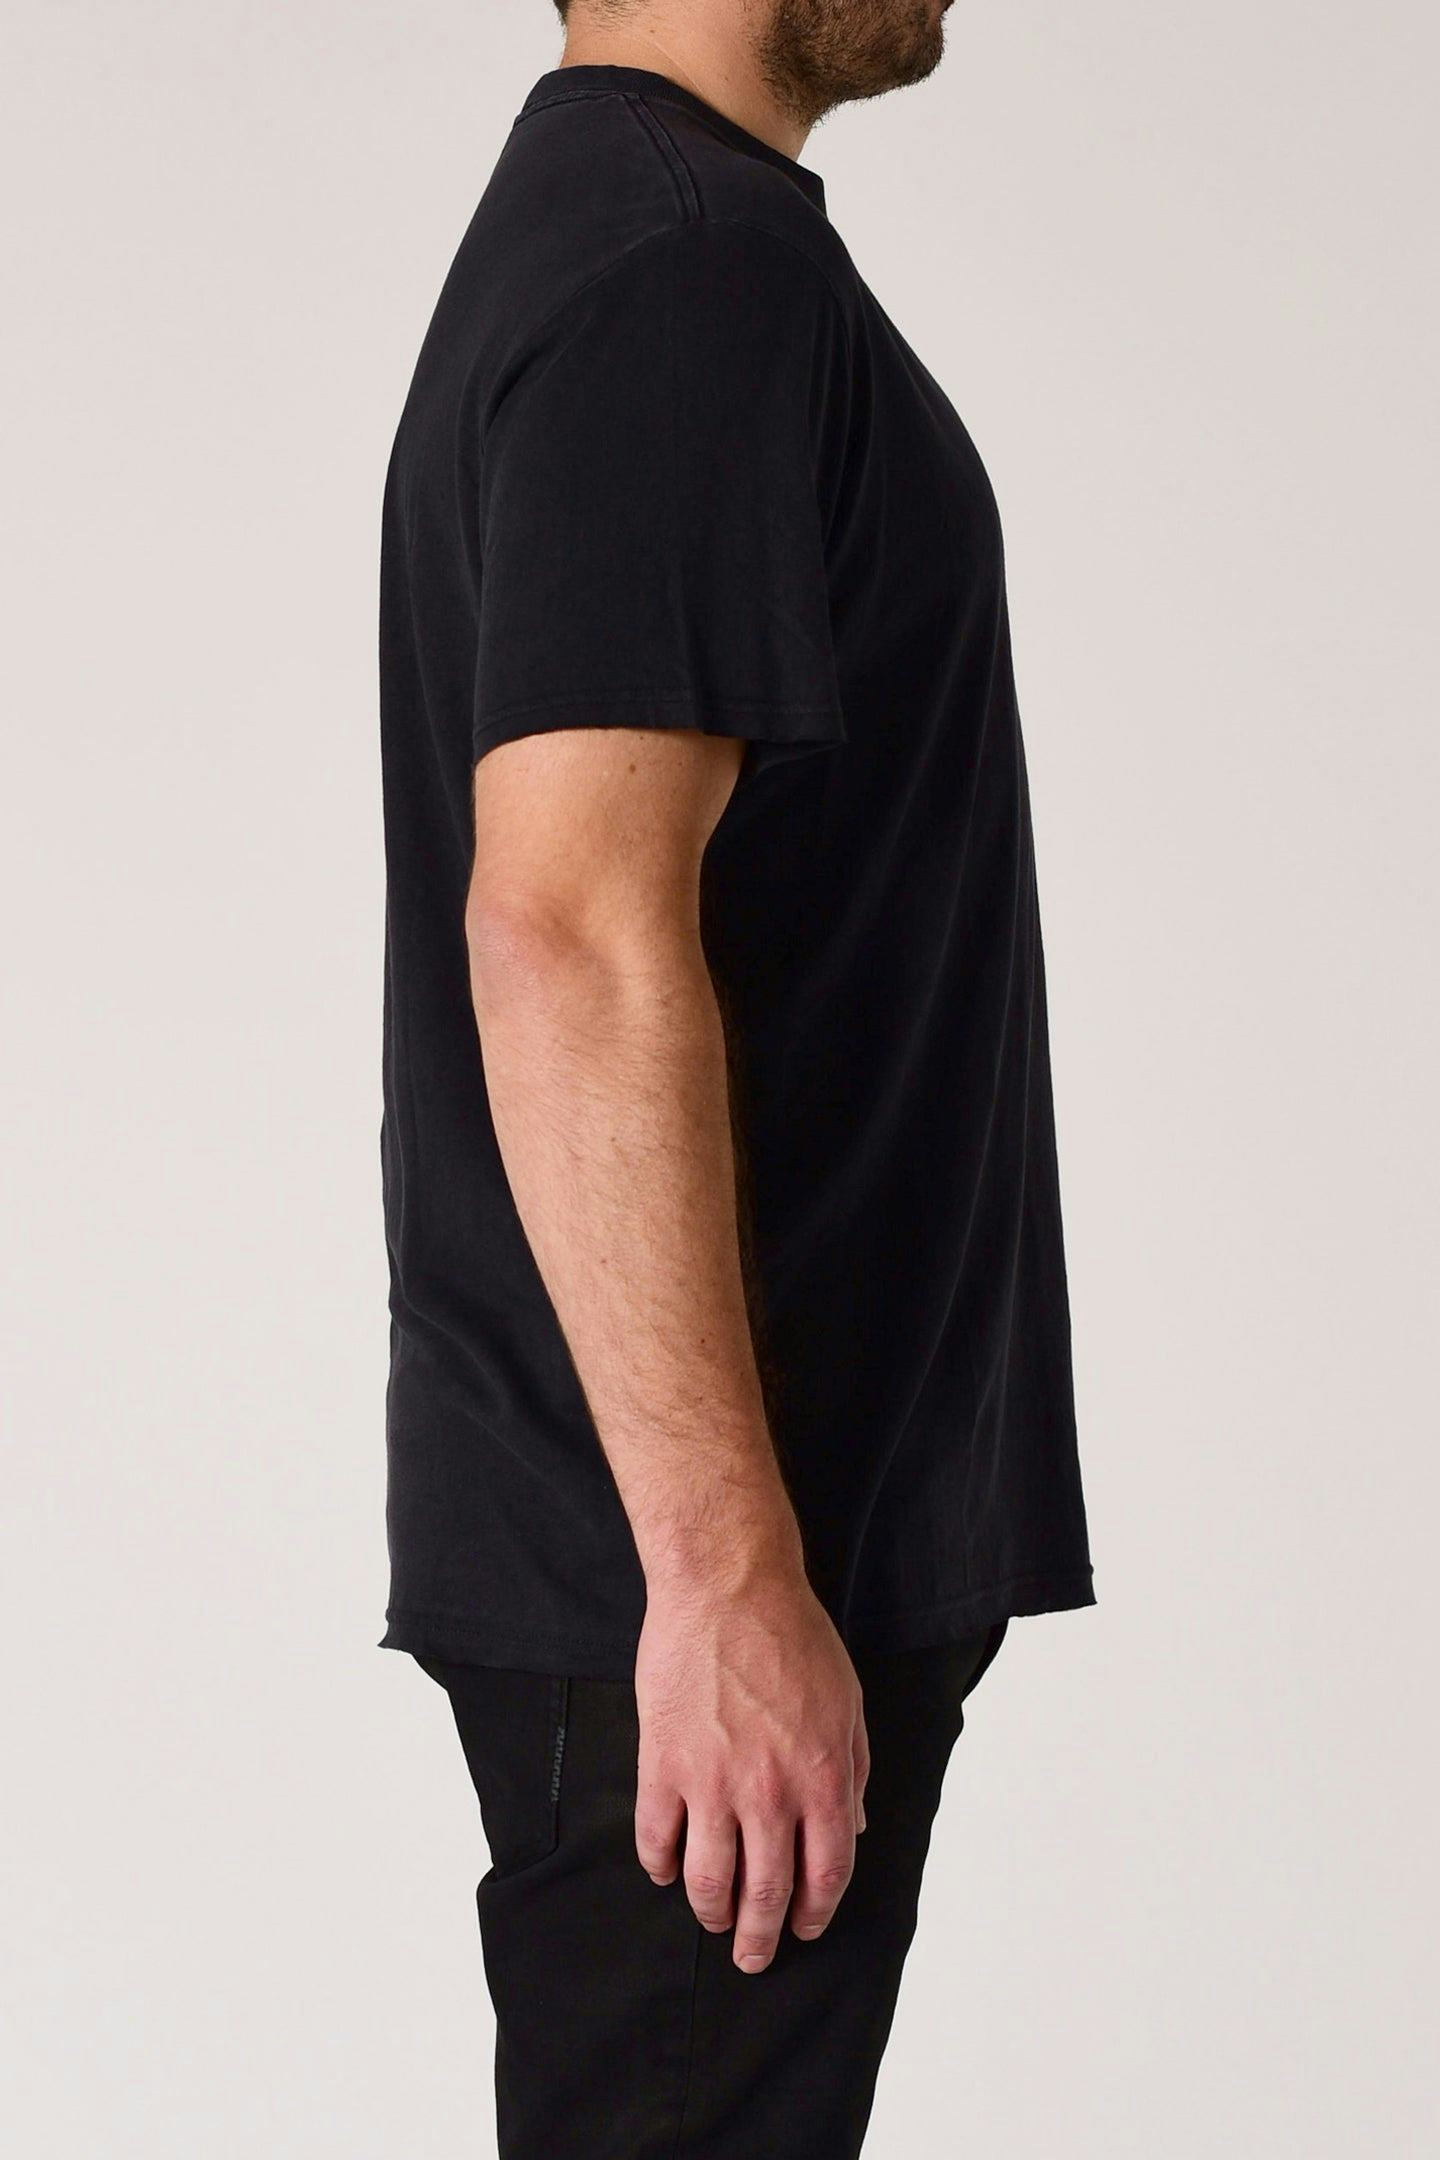 Linen Band Tee - Navy Neuw relaxed black mens-t-shirt 